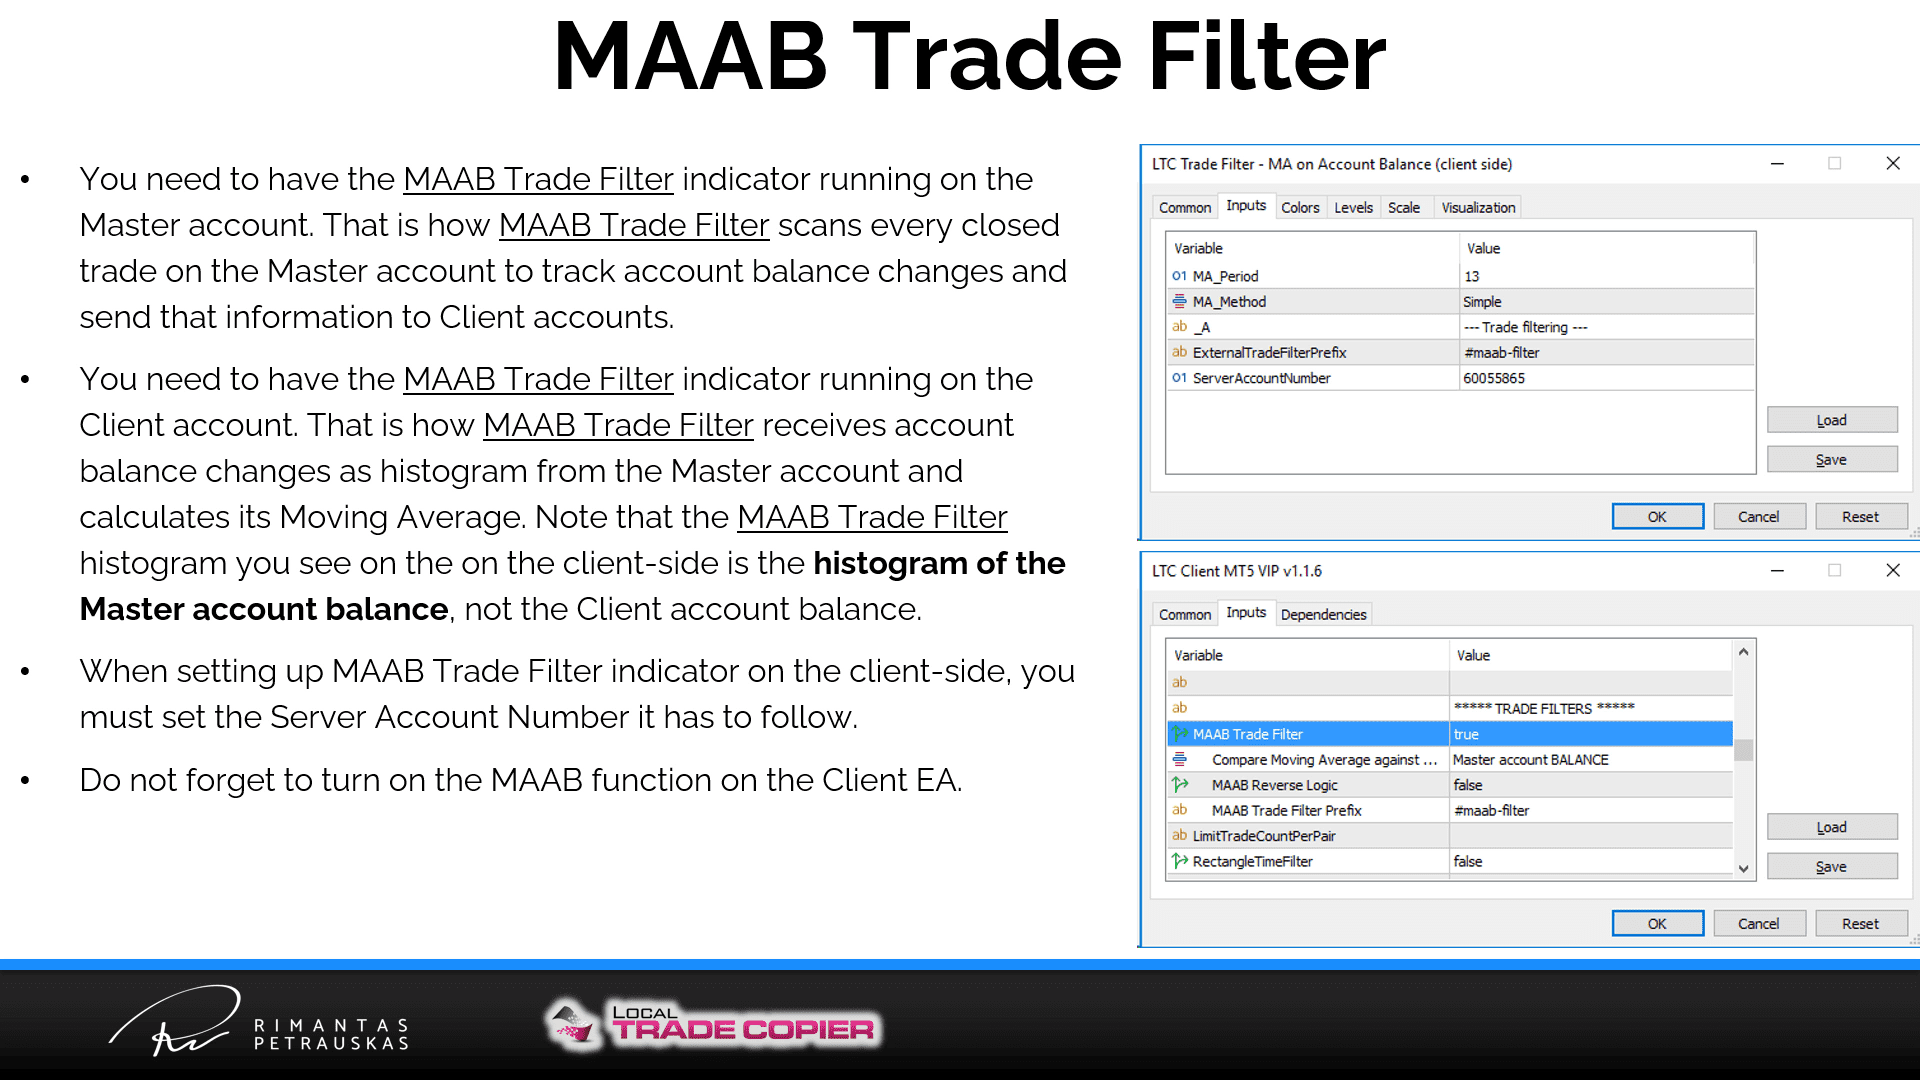 MAAB Trade Filter settings